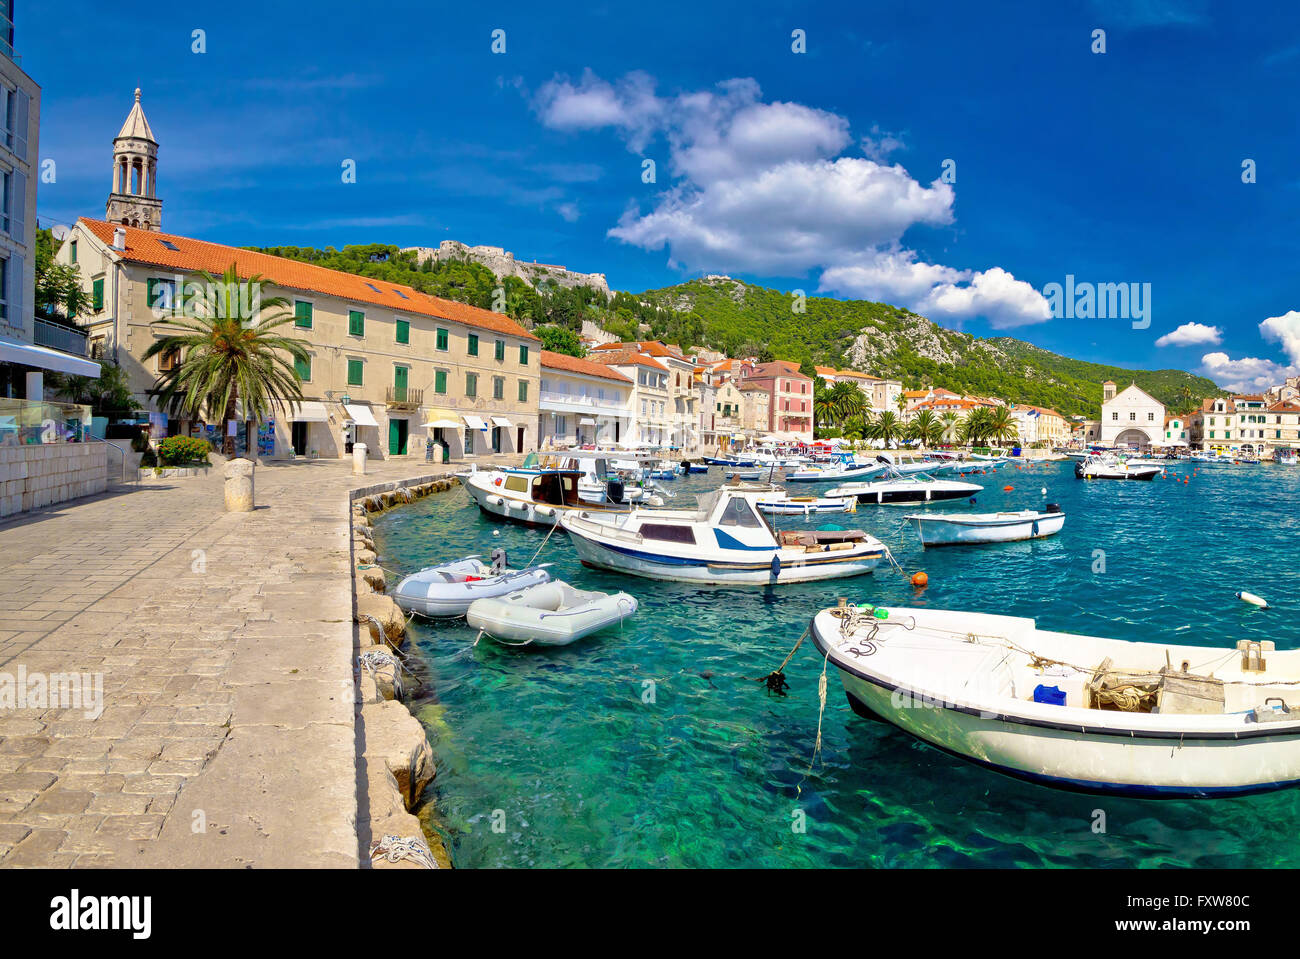 La côte pittoresque de la ville de Hvar, Dalmatie, Croatie Banque D'Images